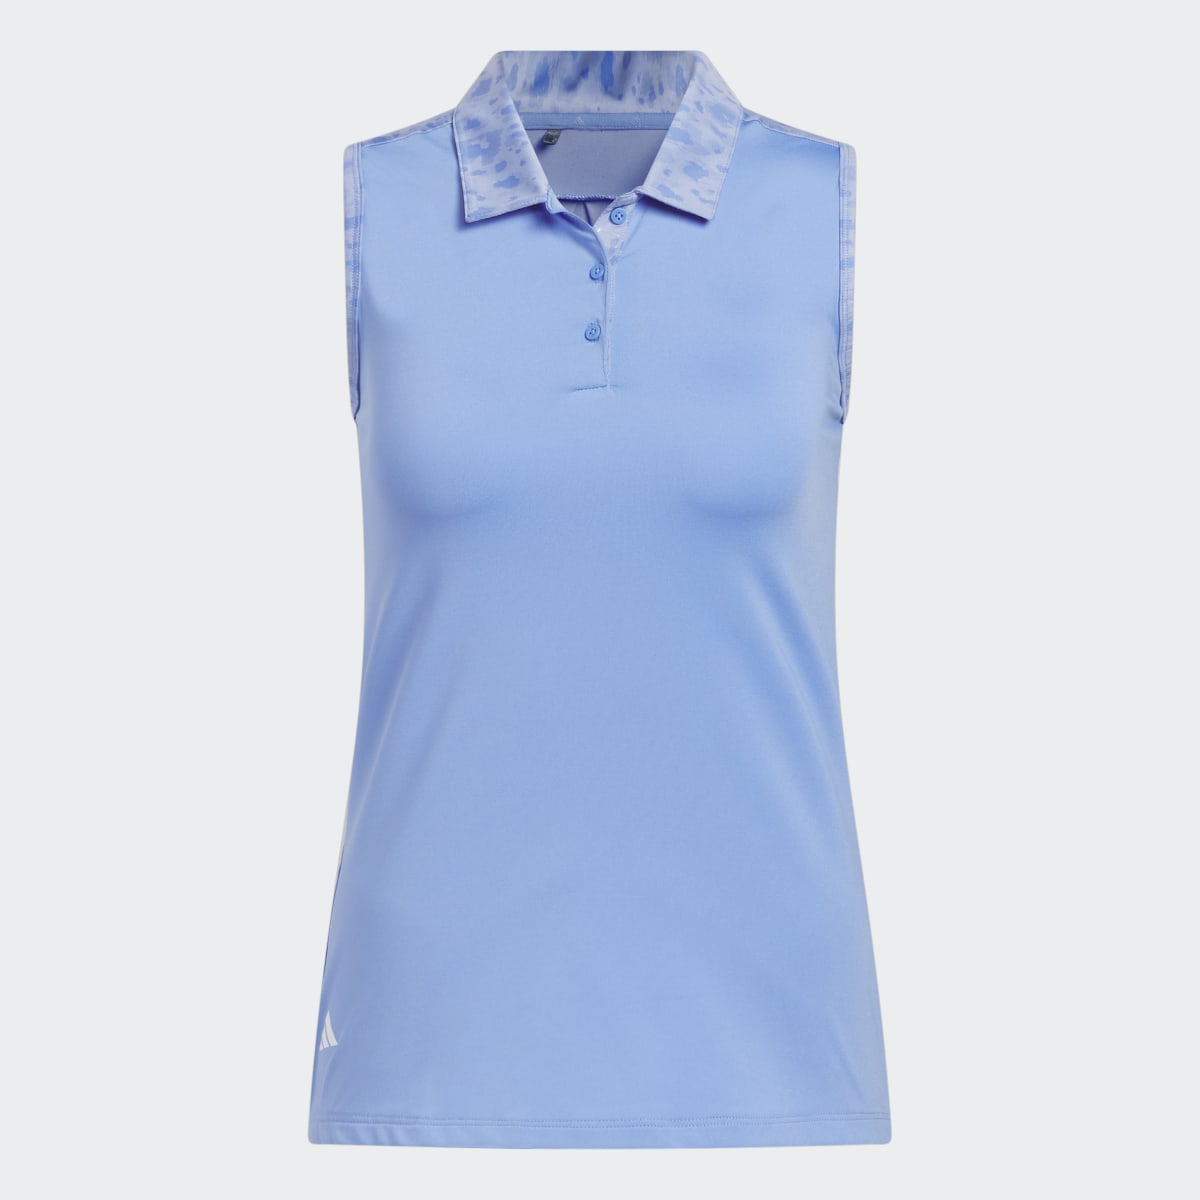 Adidas Ultimate365 Sleeveless Golf Polo Shirt. 5